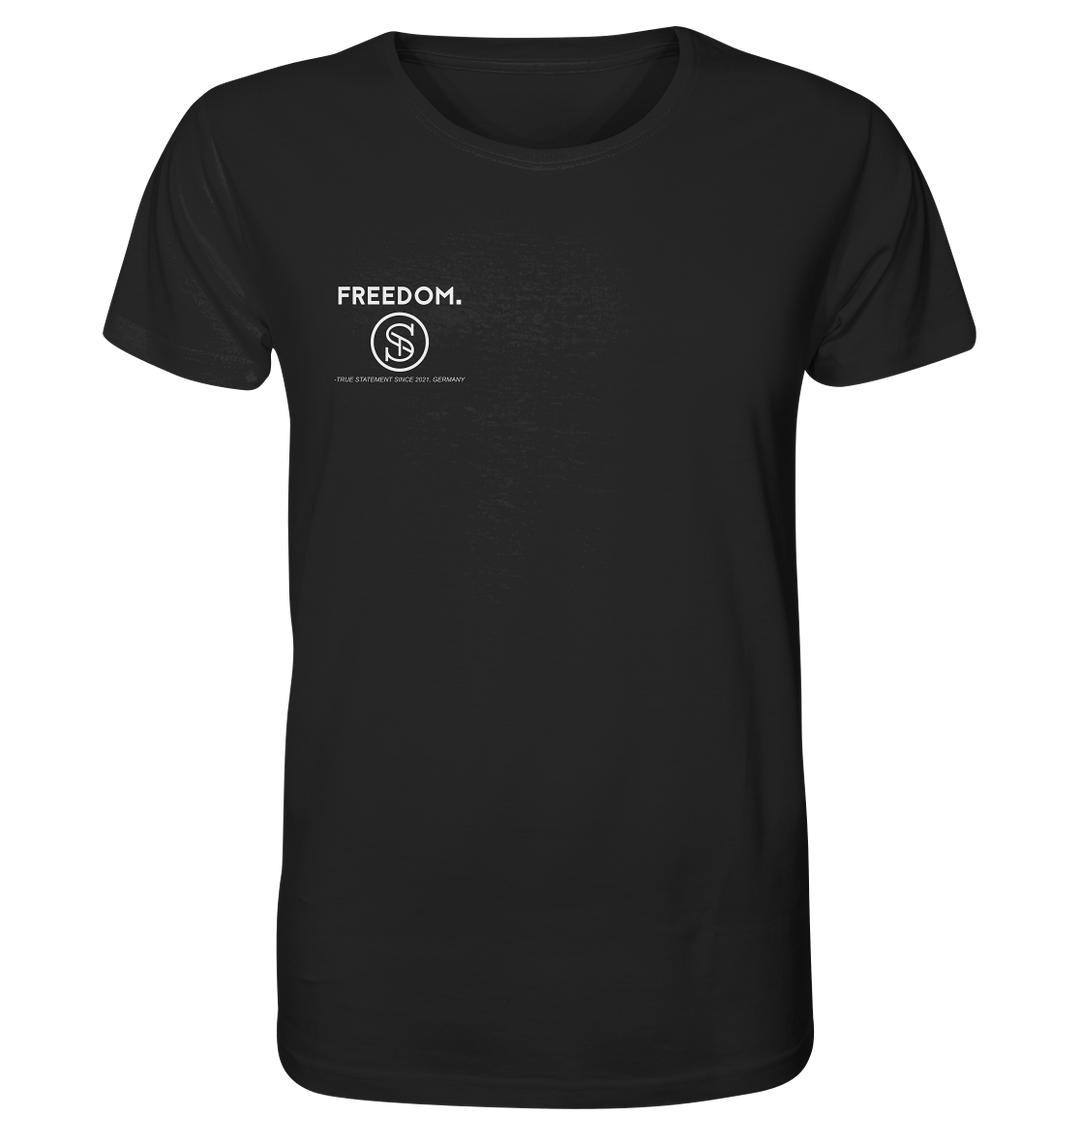 Freedom Herren - Organic Shirt Black Herren Shirt Organic Shirt True Statement